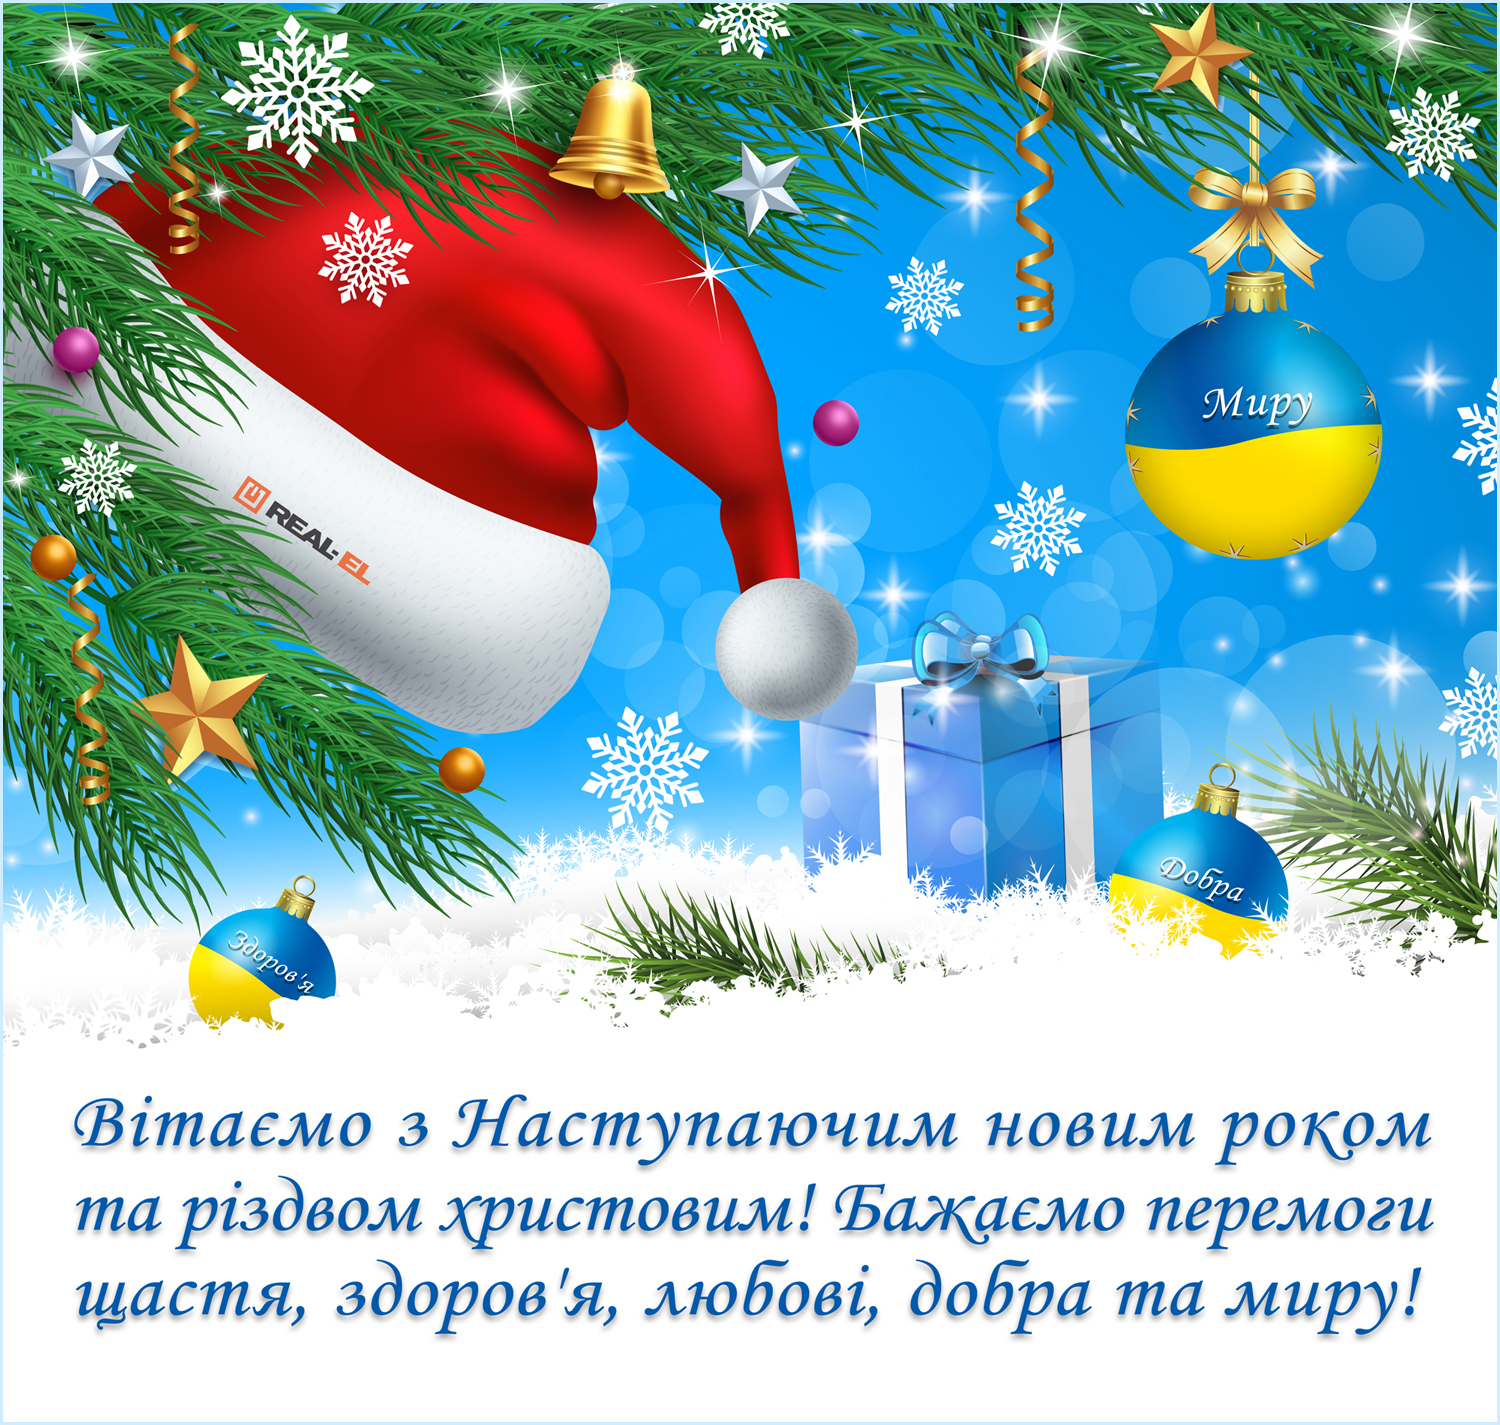 Вітаємо з наступаючим Новим роком та Різдвом Христовим!!!